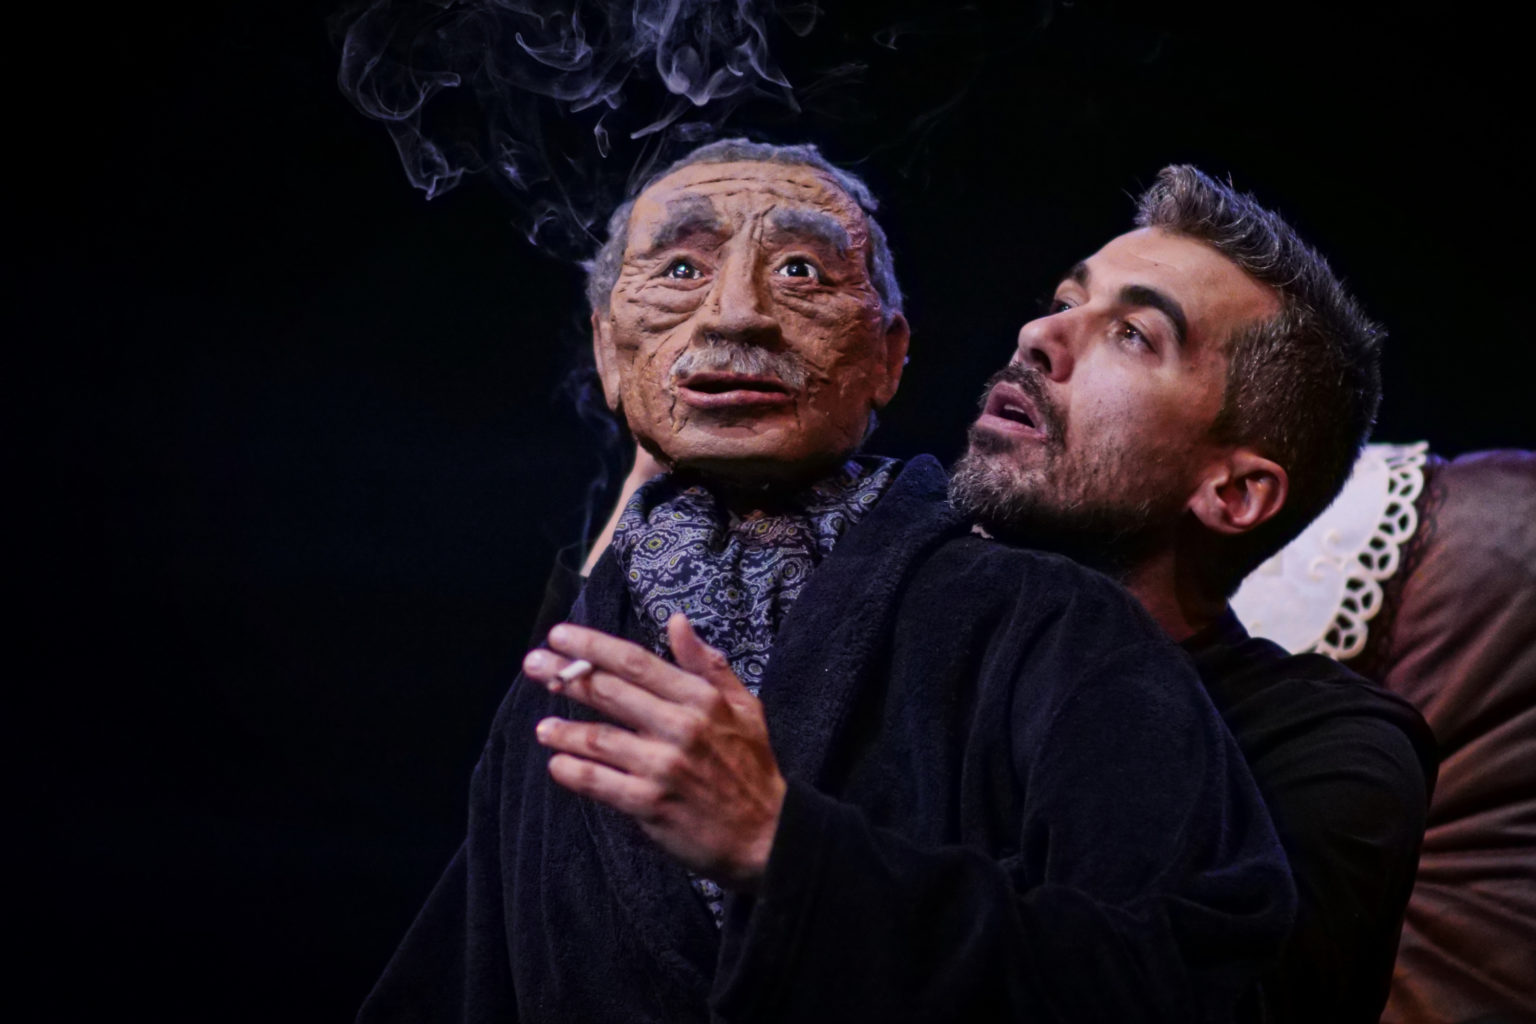 Photo du spectacle "Parti en fumée" où l'on voit le comédien Othmane Moumen avec une marionnette représentant son père. Il fume.